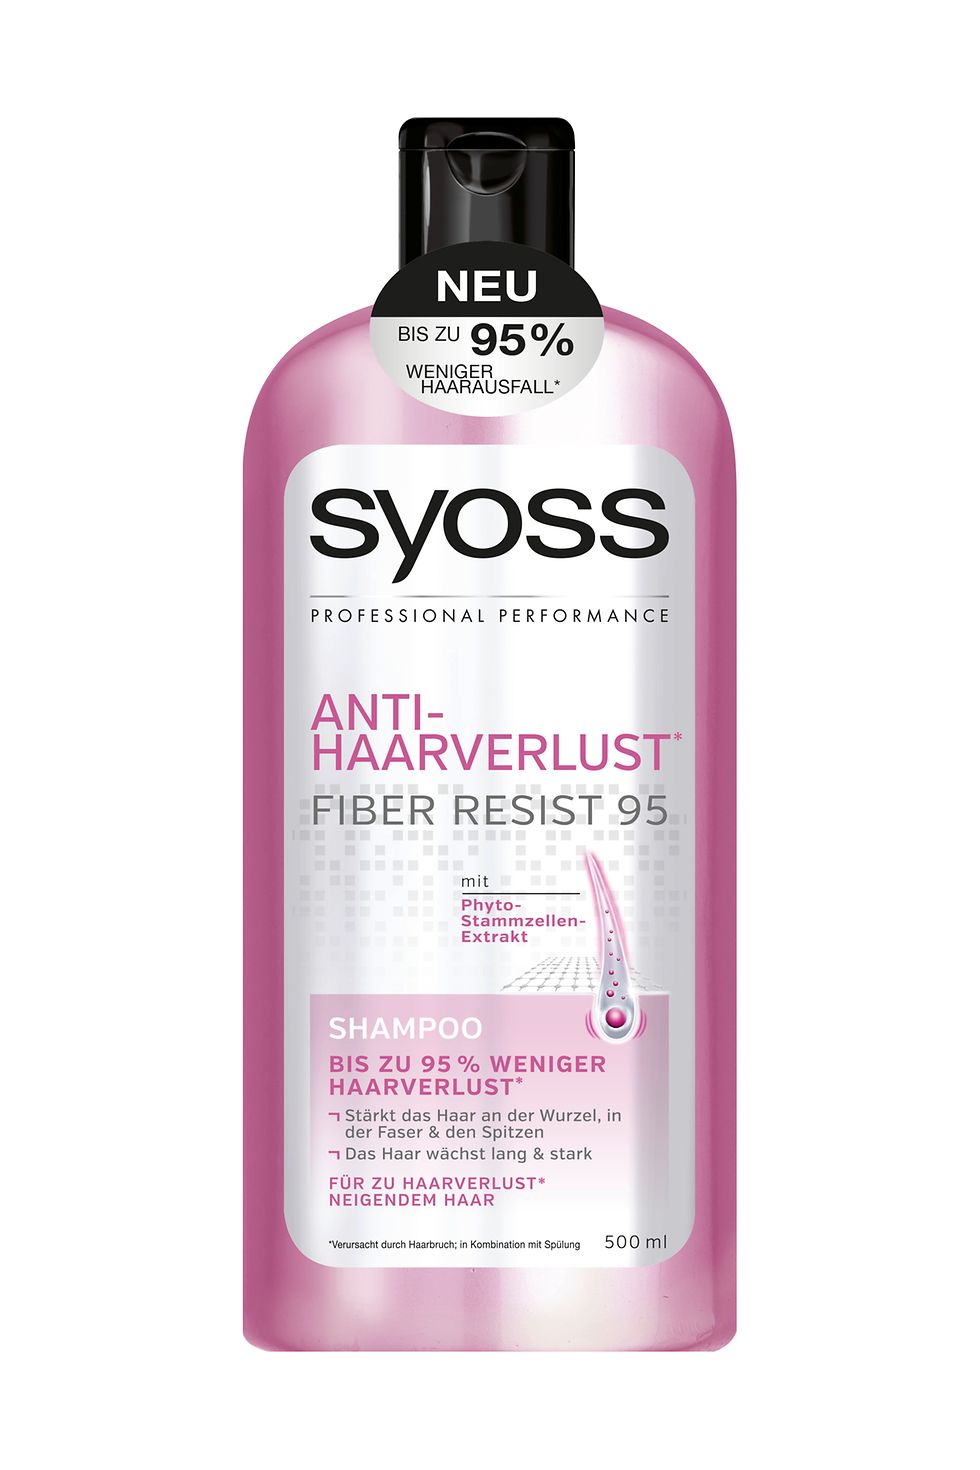 Syoss Anti-Haarverlust Fiber Resist 95 Shampoo